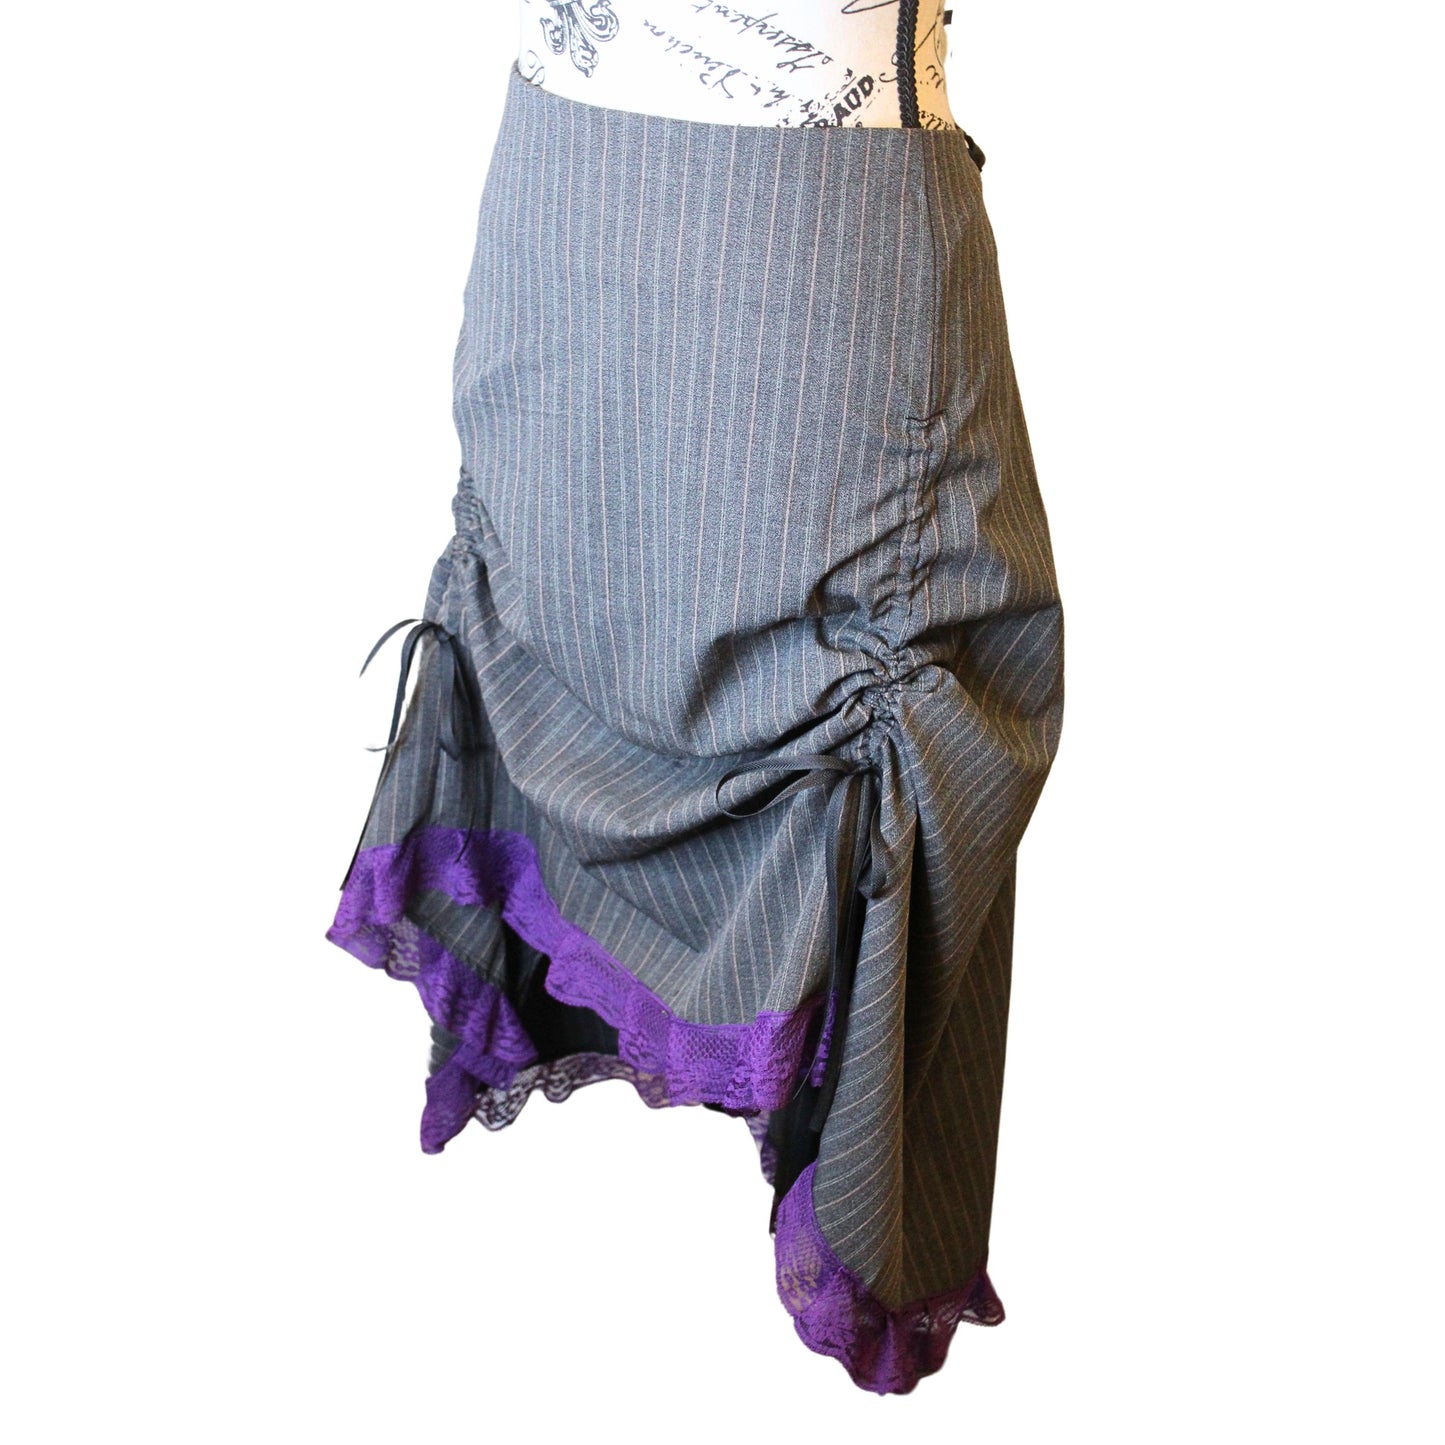 The VM Rail Pull Skirt